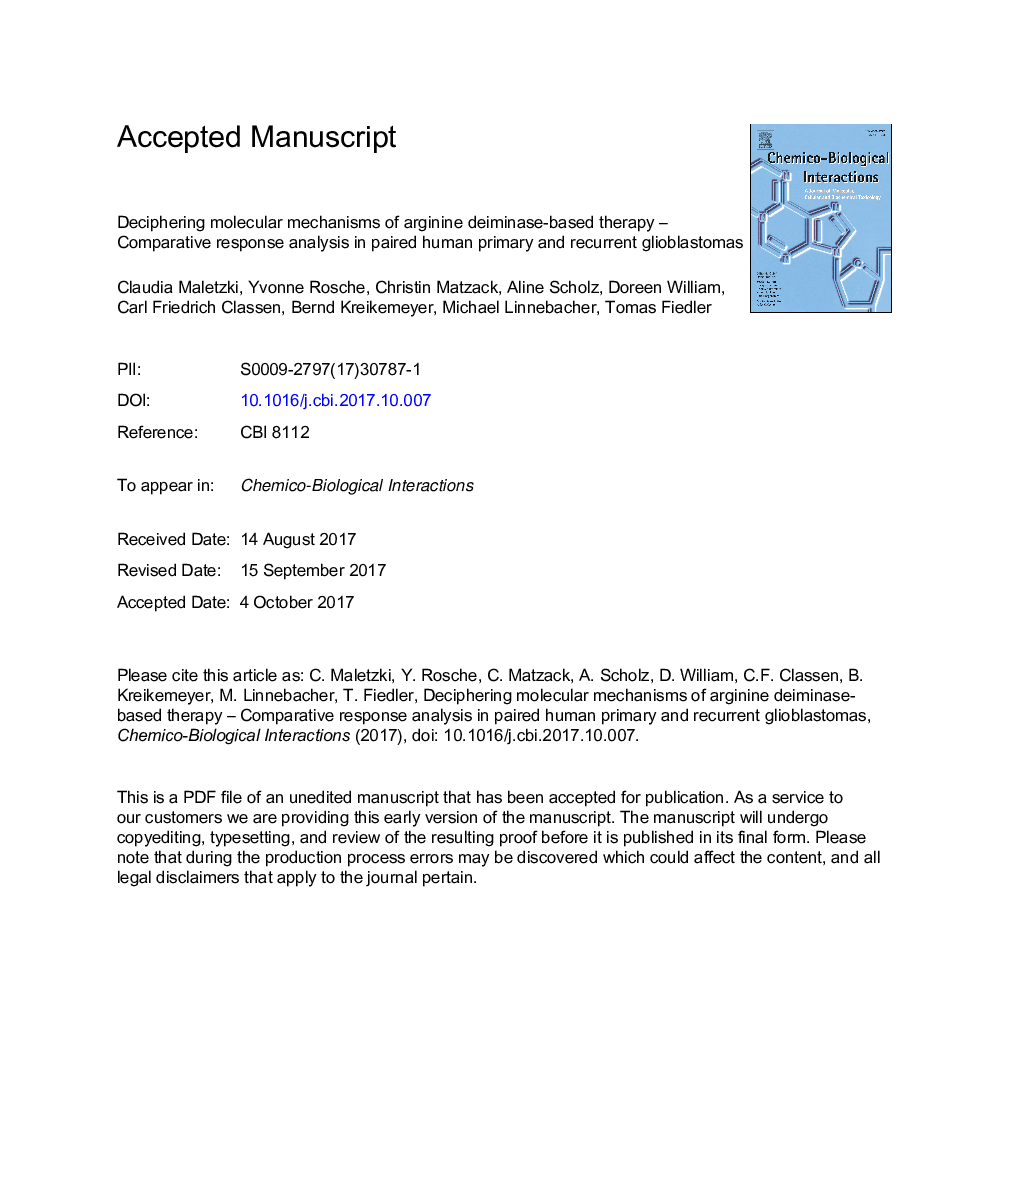 تجزیه و تحلیل مکانیزم های مولکولی درمان مبتنی بر آرژینین دییمیناز - تجزیه و تحلیل مقایسهای در گلیوبلاستوم اولیه و گسسته انسانی 